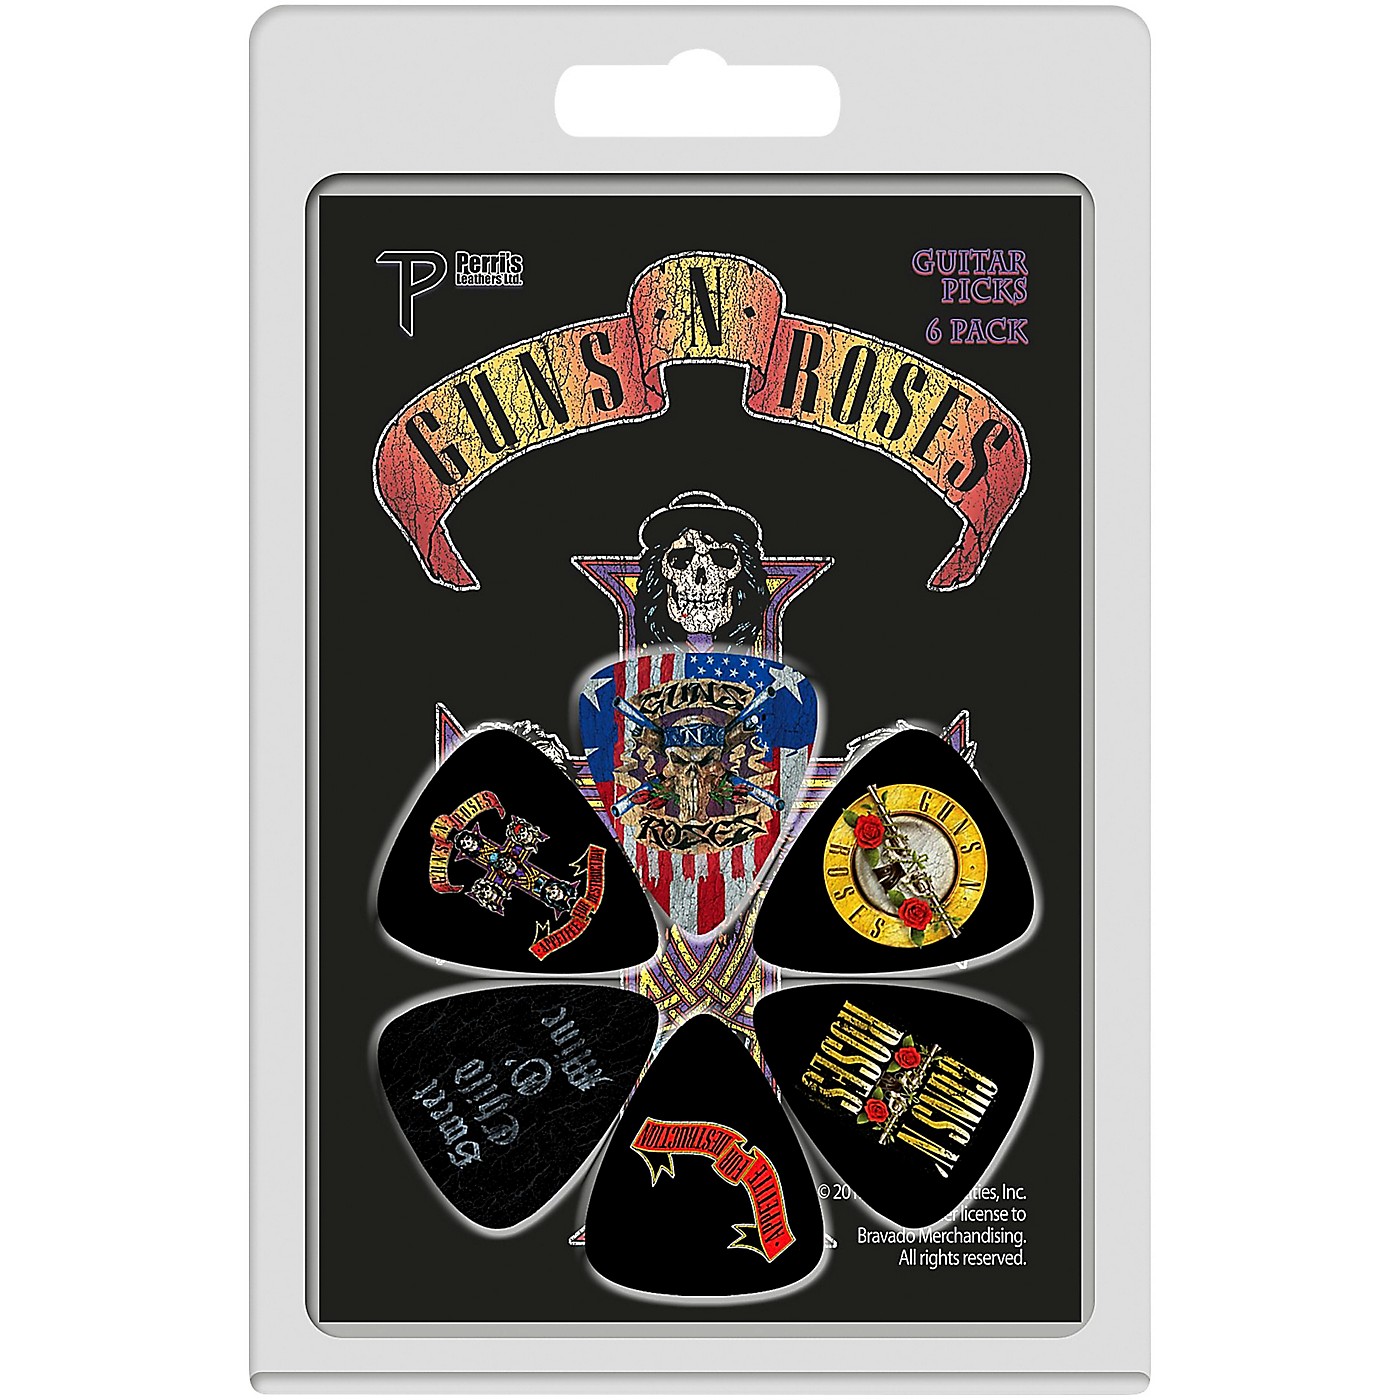 Perri's Guns N Roses Guitar Pick 6-Pack thumbnail